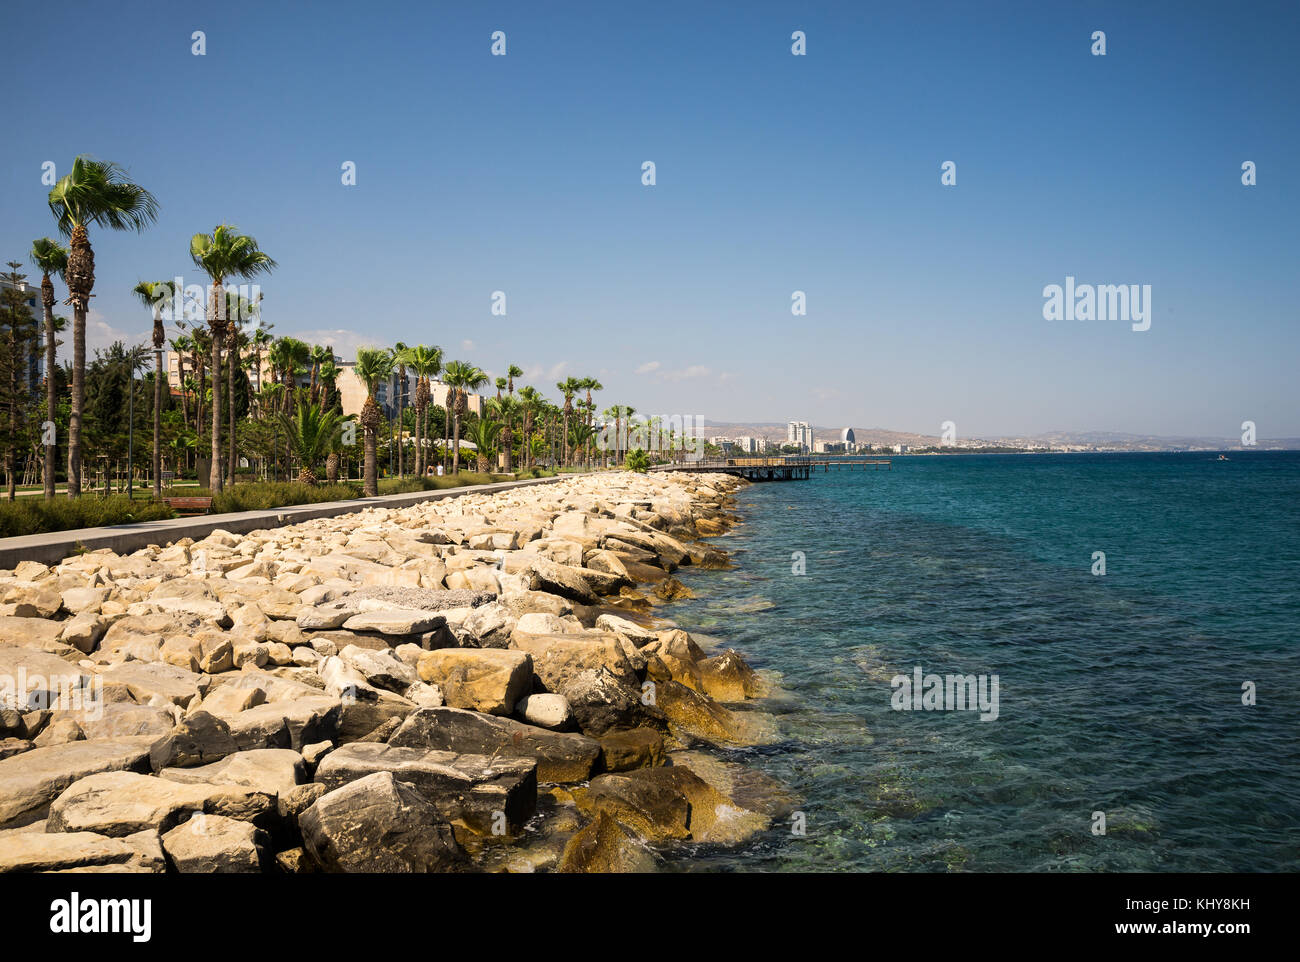 Limassol, promenade littoral avec de hauts palmiers le long de lui, Chypre, mer méditerranée Banque D'Images